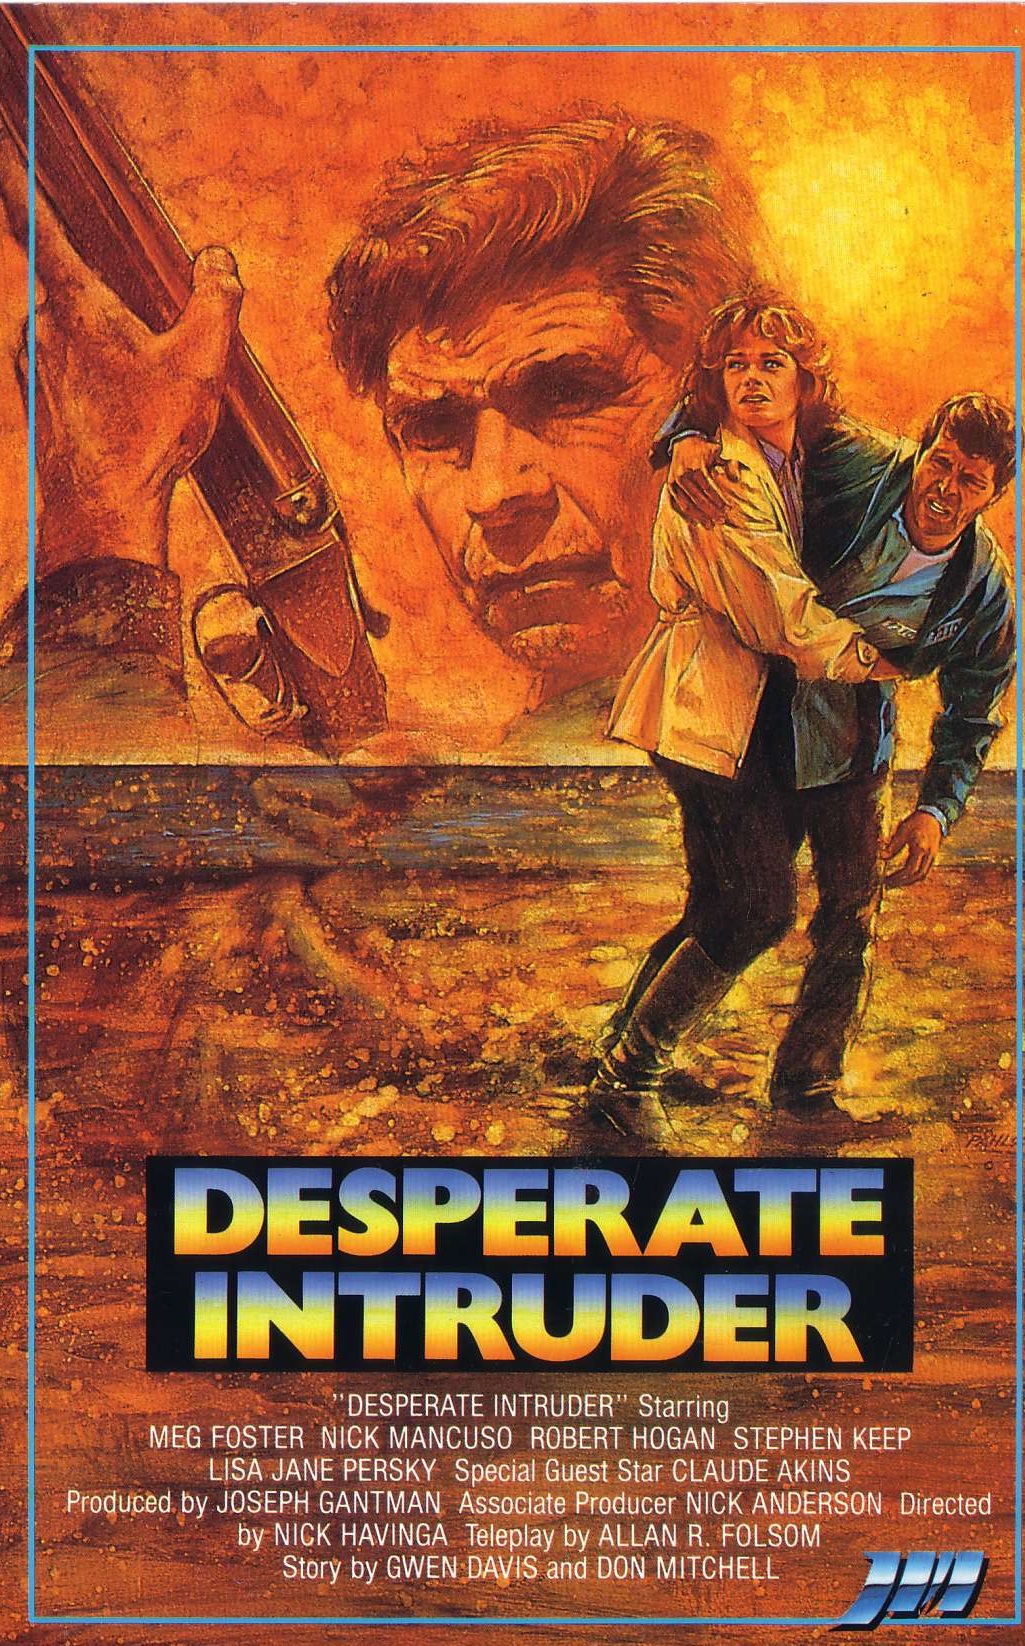 Desperate Intruder (1983) Screenshot 3 